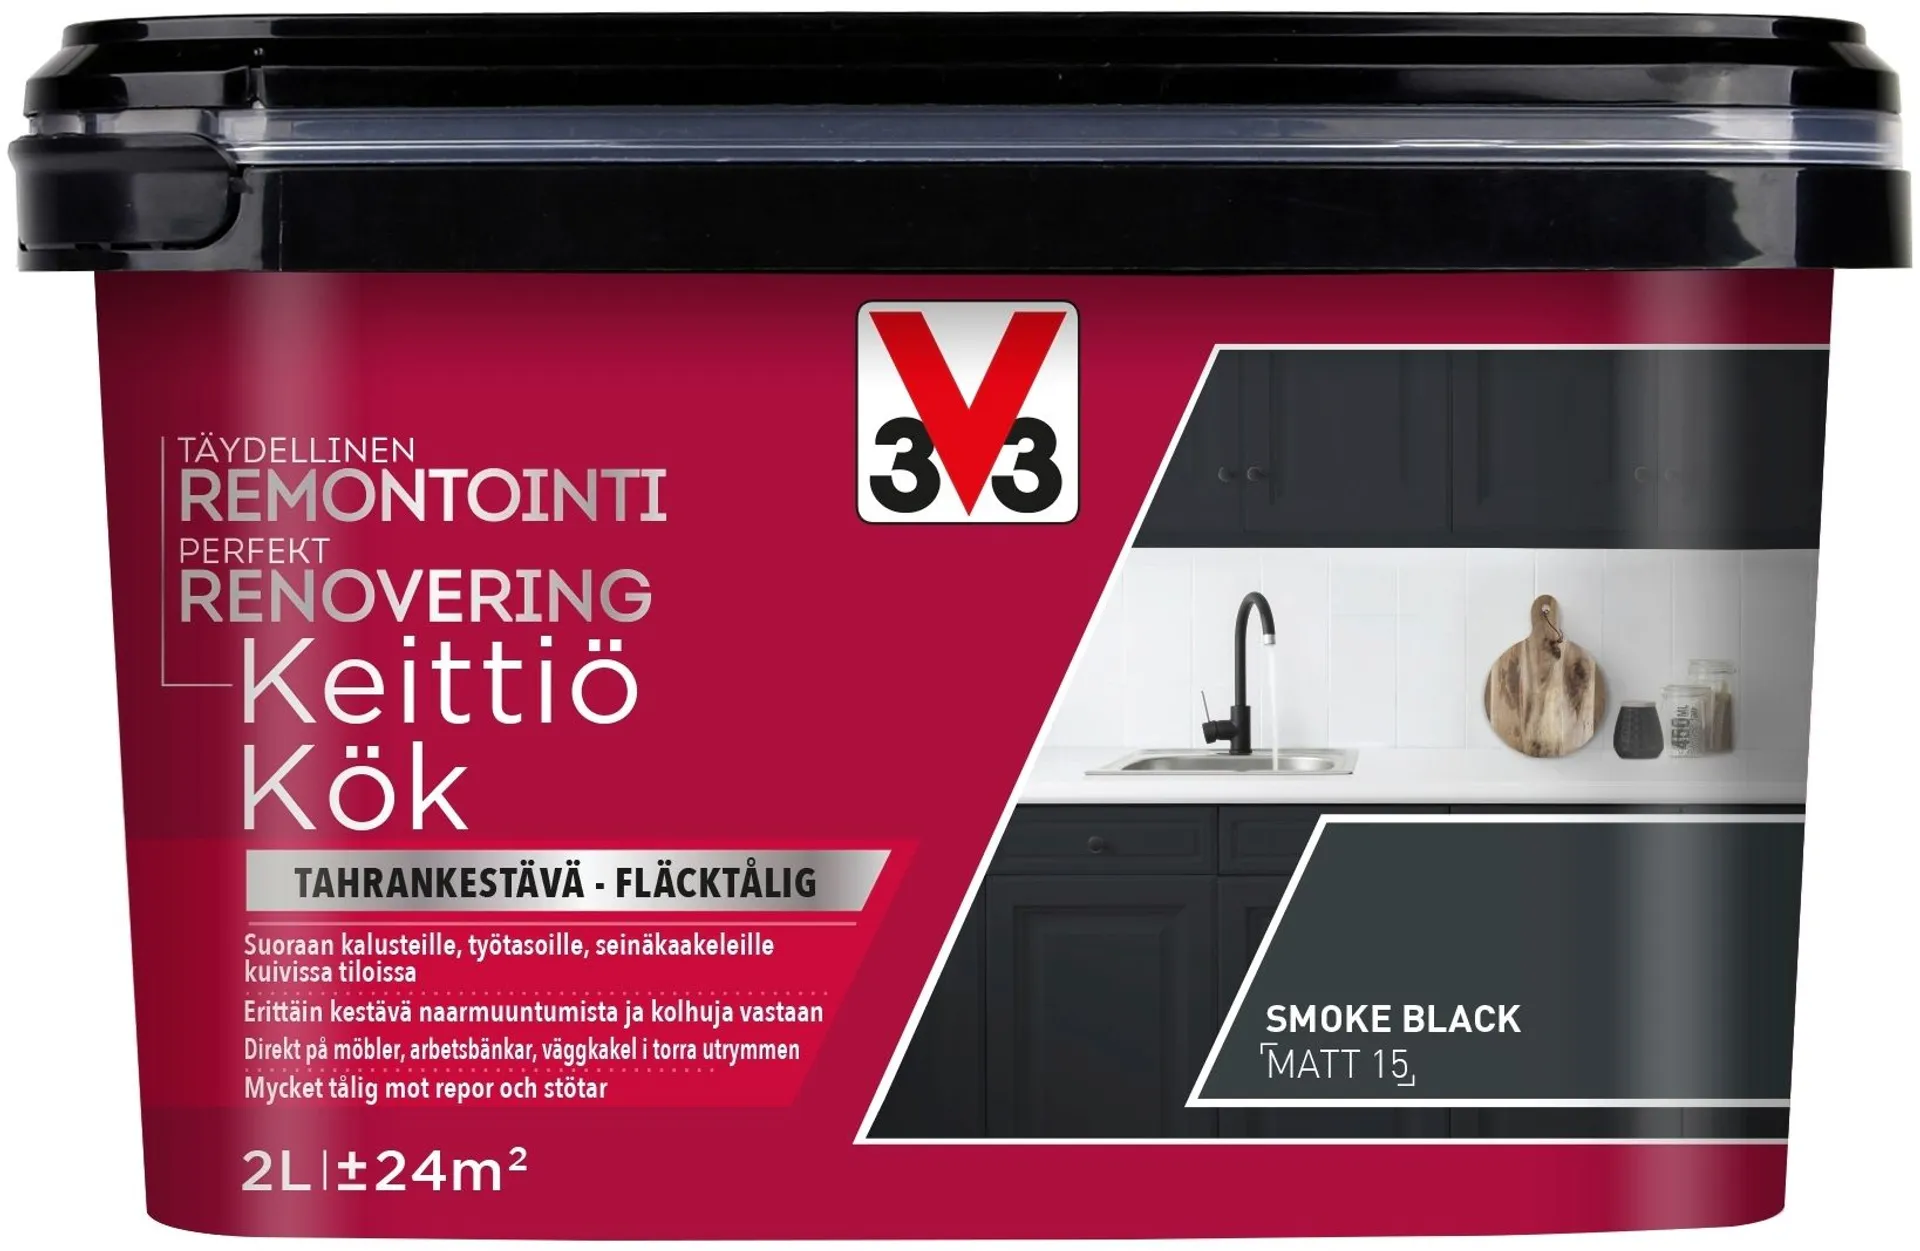 V33 Remontointimaali keittiö 2L Smoke black matt